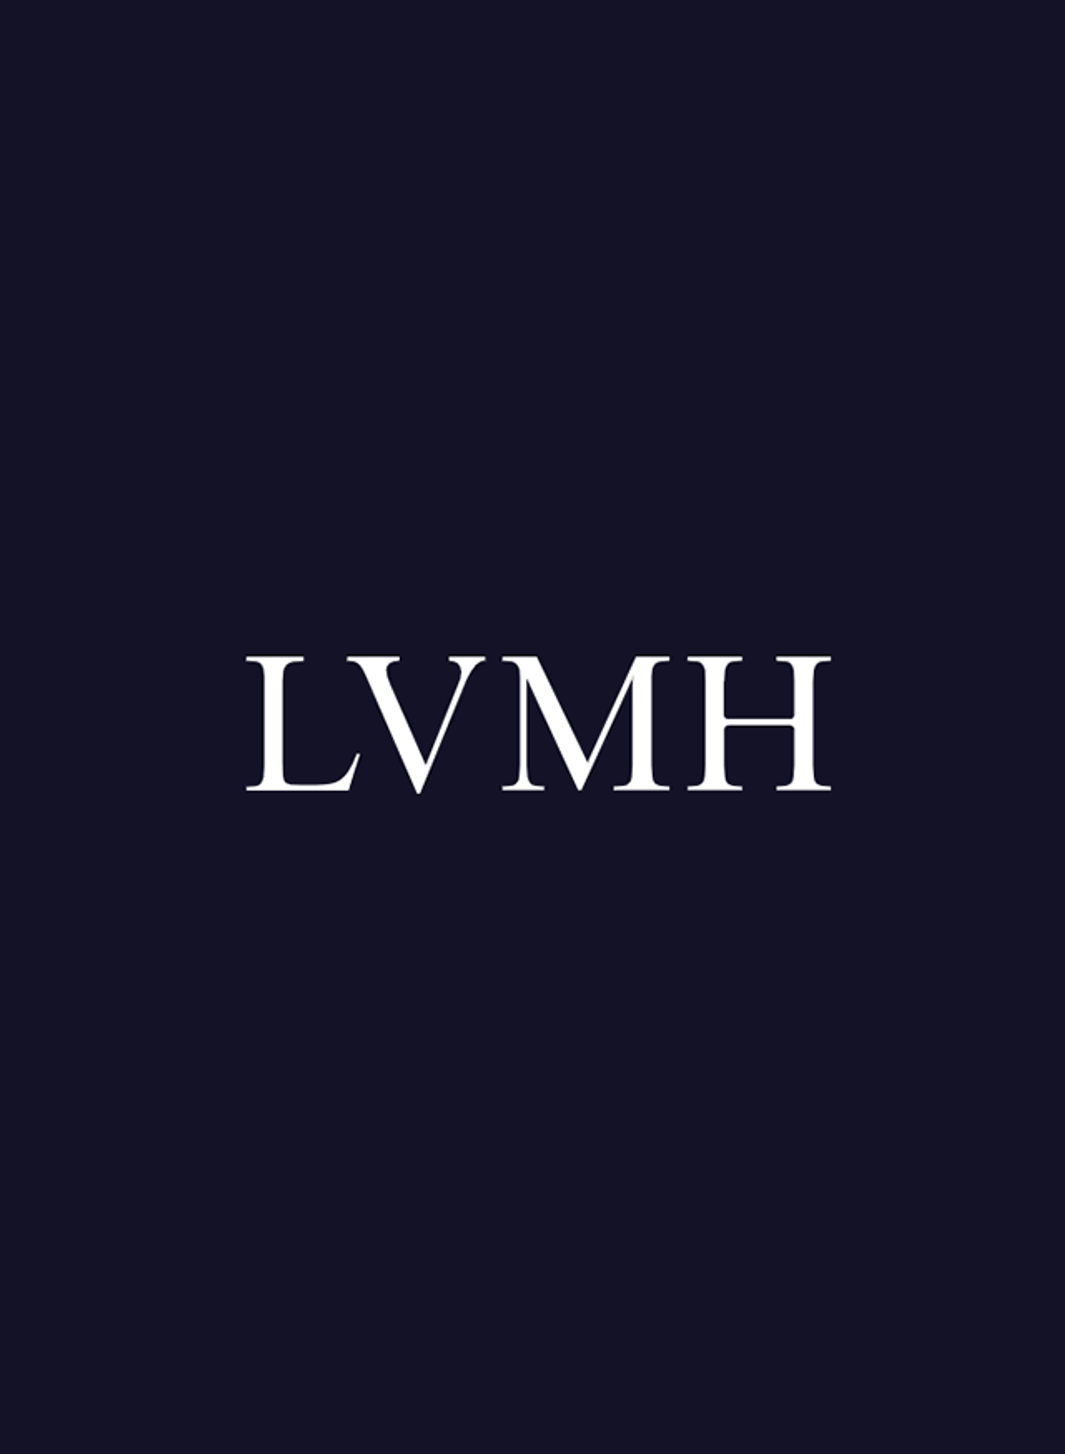 LVMH s’associe au Prix des Artisanes.